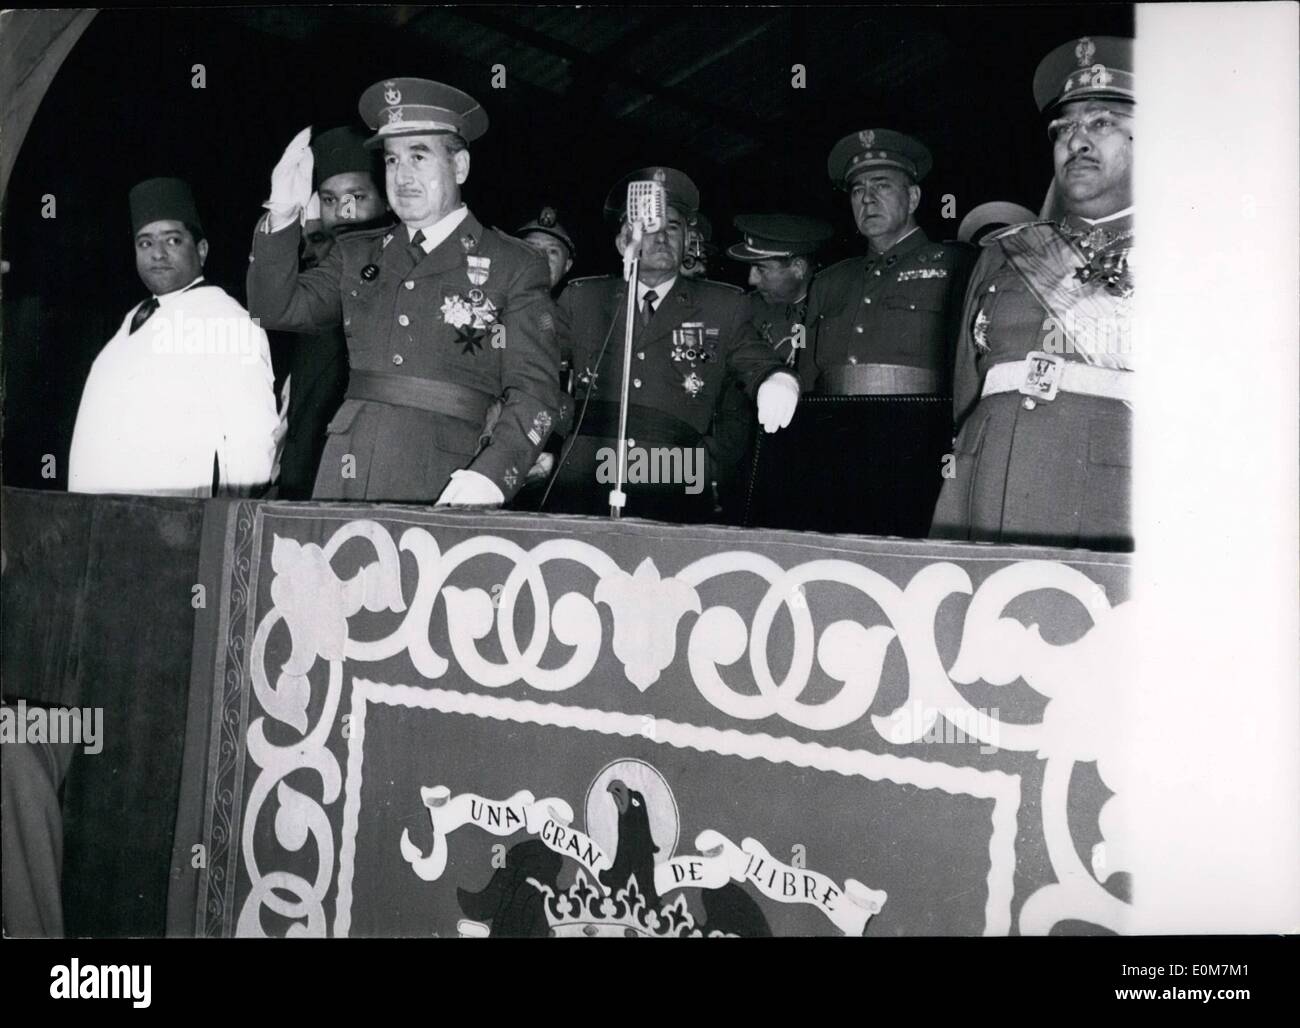 Gen 01, 1954 - Tetuan anti francese di dimostrazione. Lo spagnolo ad alto commissario Garcia Valino, foreground, stand ufficiale onde per il tifo marocchini durante il anri dimostrazione francese tenutosi a Tetuan, spagnolo in Marocco, di recente. Foto Stock